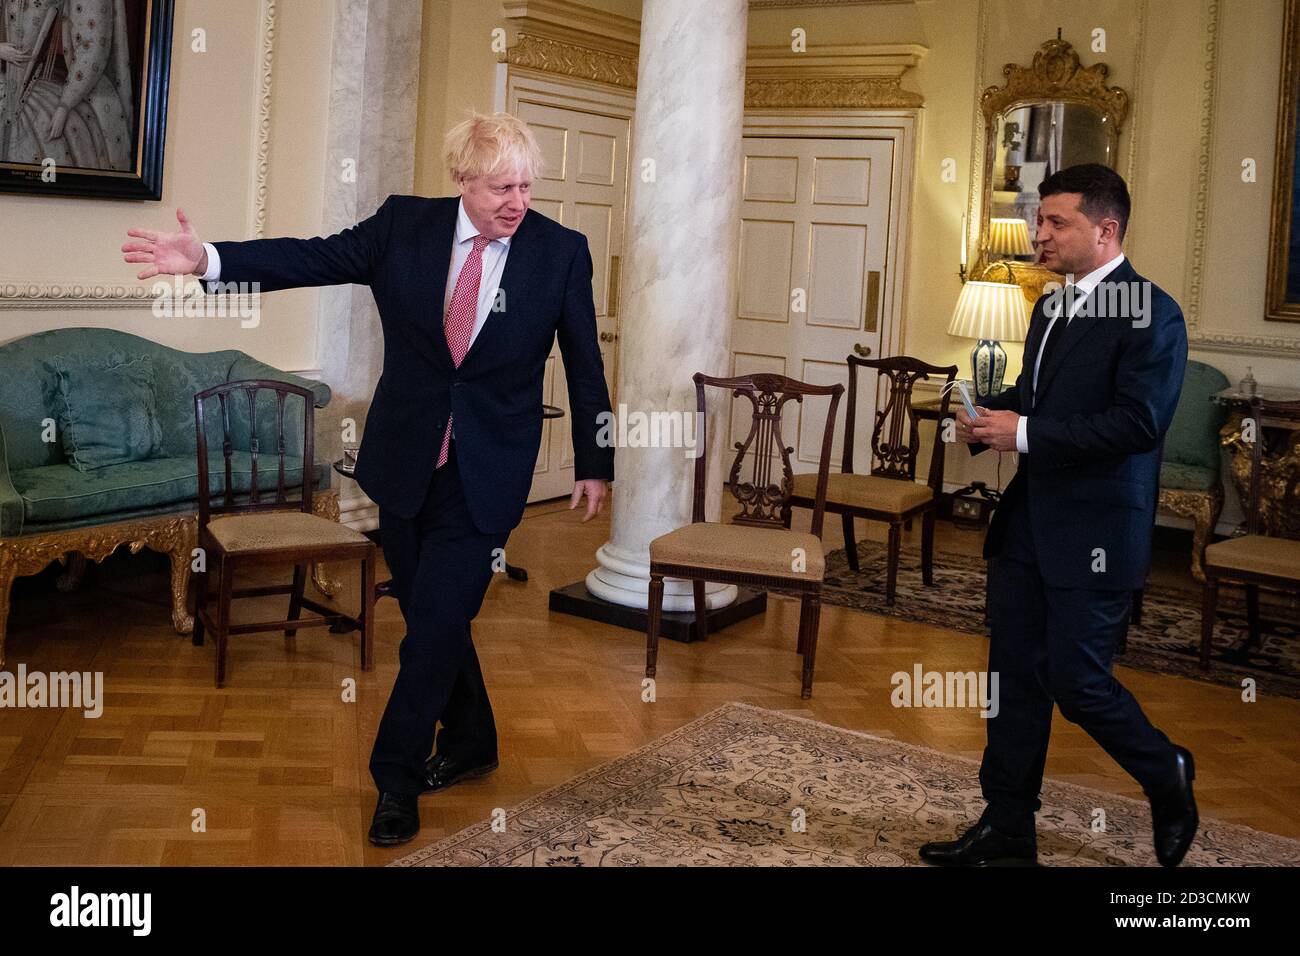 Il primo ministro Boris Johnson accoglie il presidente dell'Ucraina, Volodymyr Zelenskyy, a Downing Street , Londra, in vista di un incontro per la firma di un accordo di partenariato strategico con il presidente di fronte al 'comportamento stabilizzante' della Russia nei confronti del paese. Foto Stock